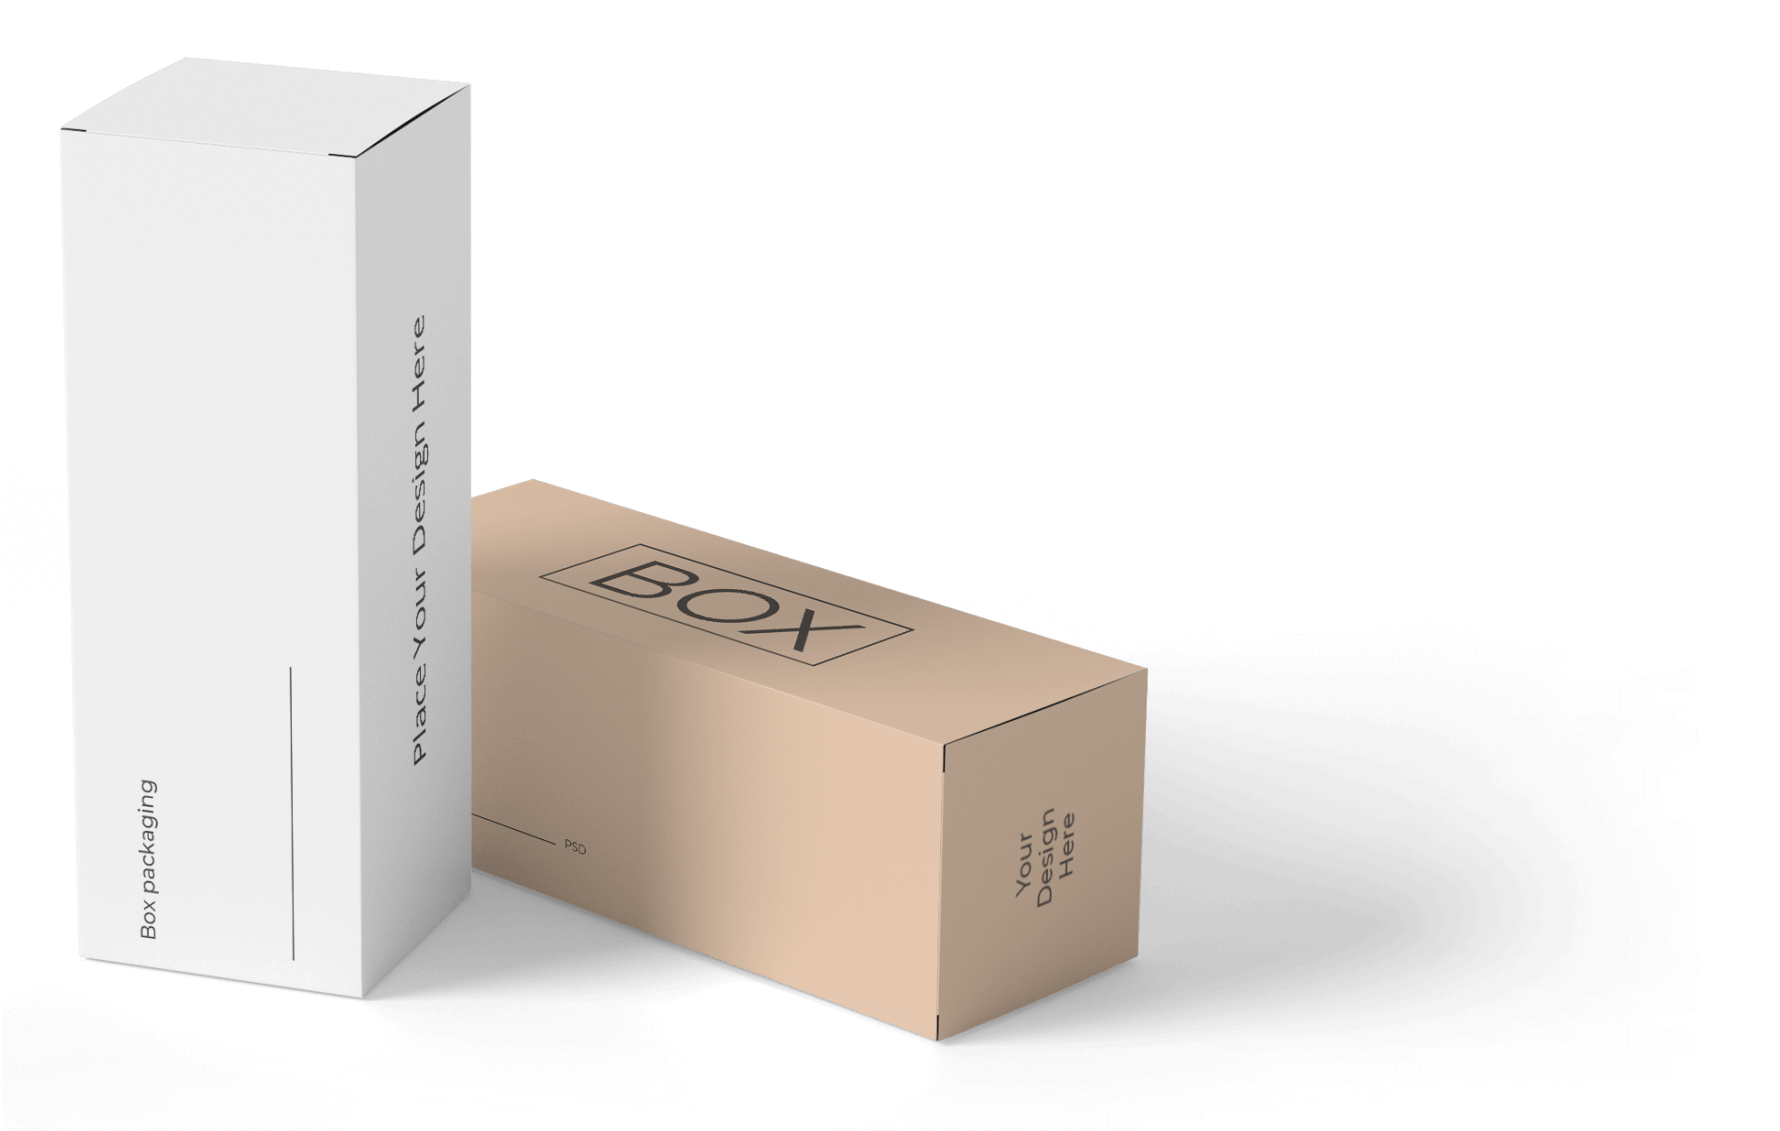 Design Custom Boxes